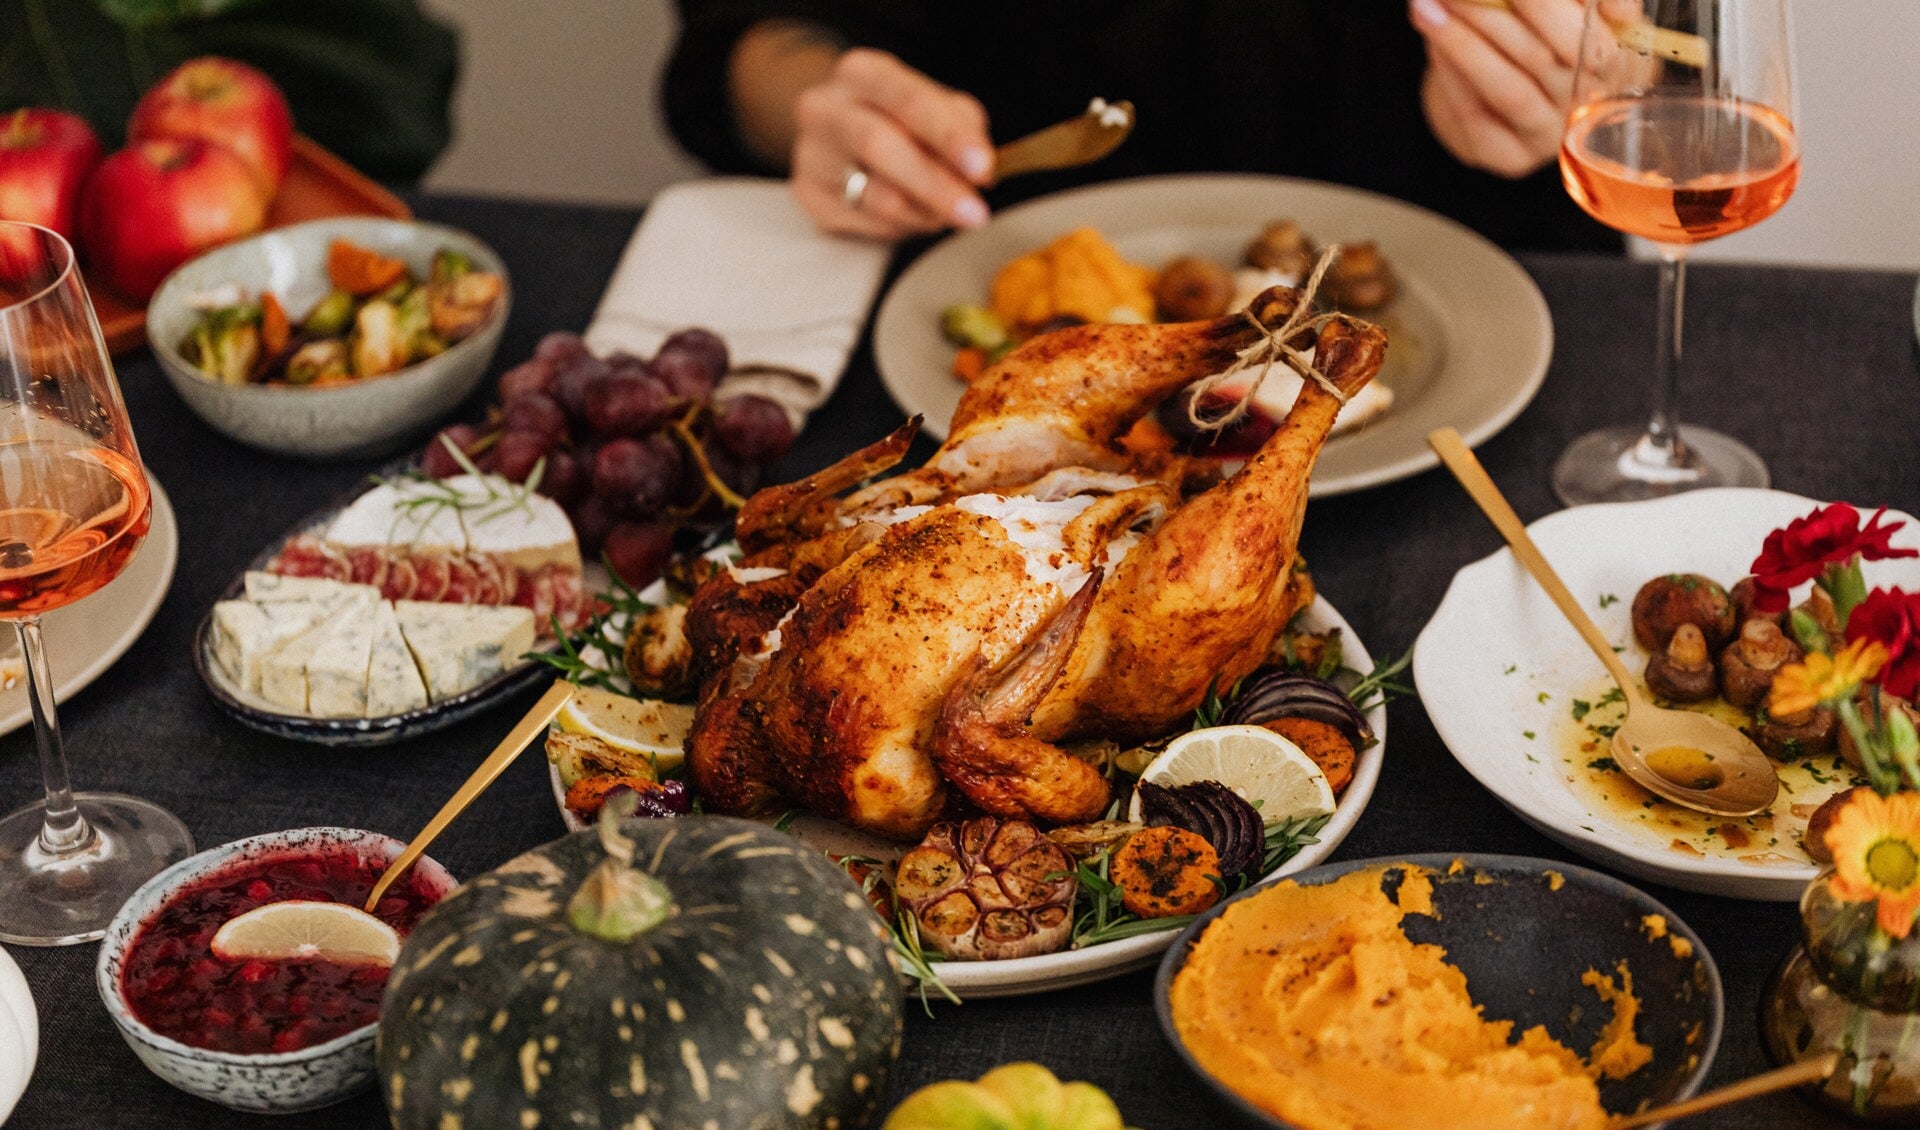 Thanksgiving wordt vaak gevierd met de hele familie die een kalkoen eet.